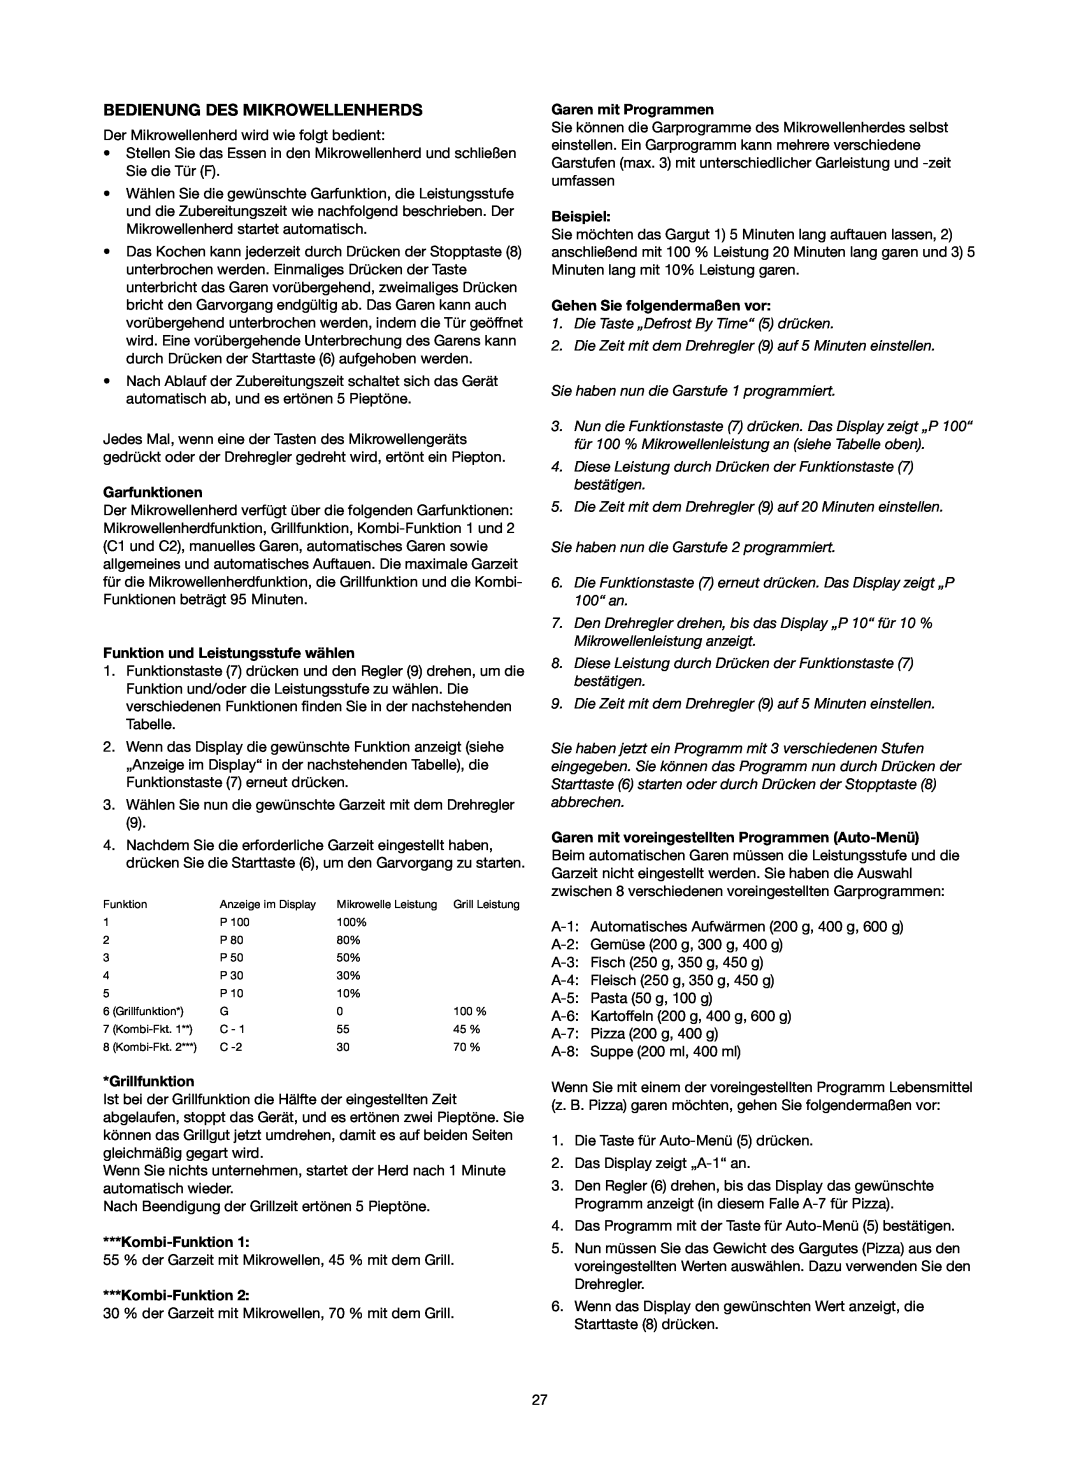 Melissa 753-089 manual Bedienung Des Mikrowellenherds, Garfunktionen, Funktion und Leistungsstufe wählen, Kombi-Funktion1 